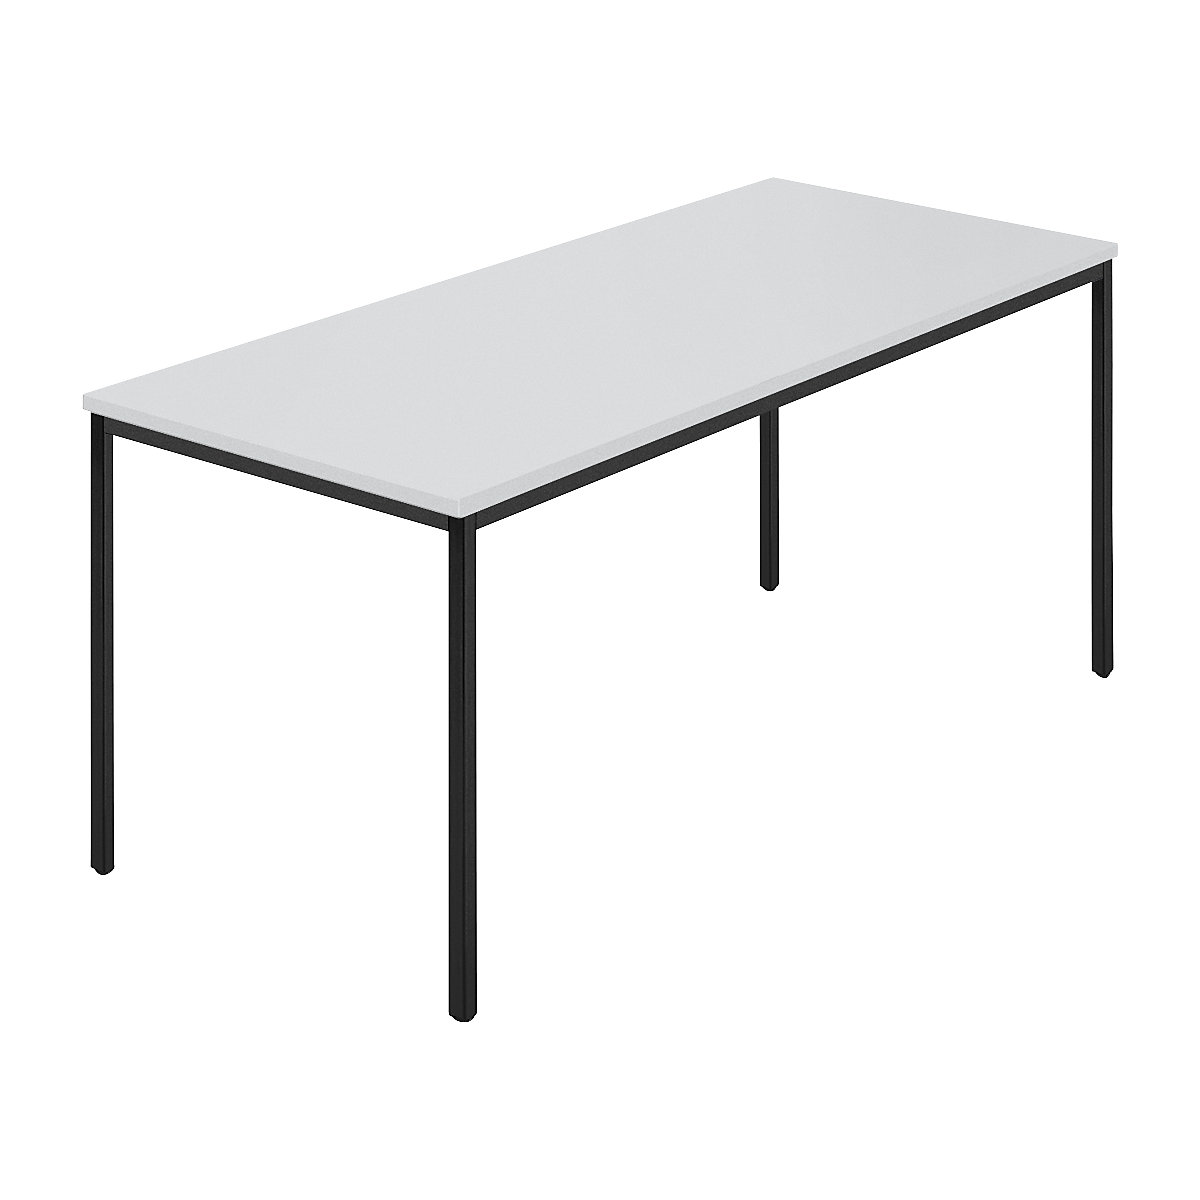 Rechthoekige tafel, vierkante buis met coating, b x d = 1600 x 800 mm, grijs / antracietkleurig-4